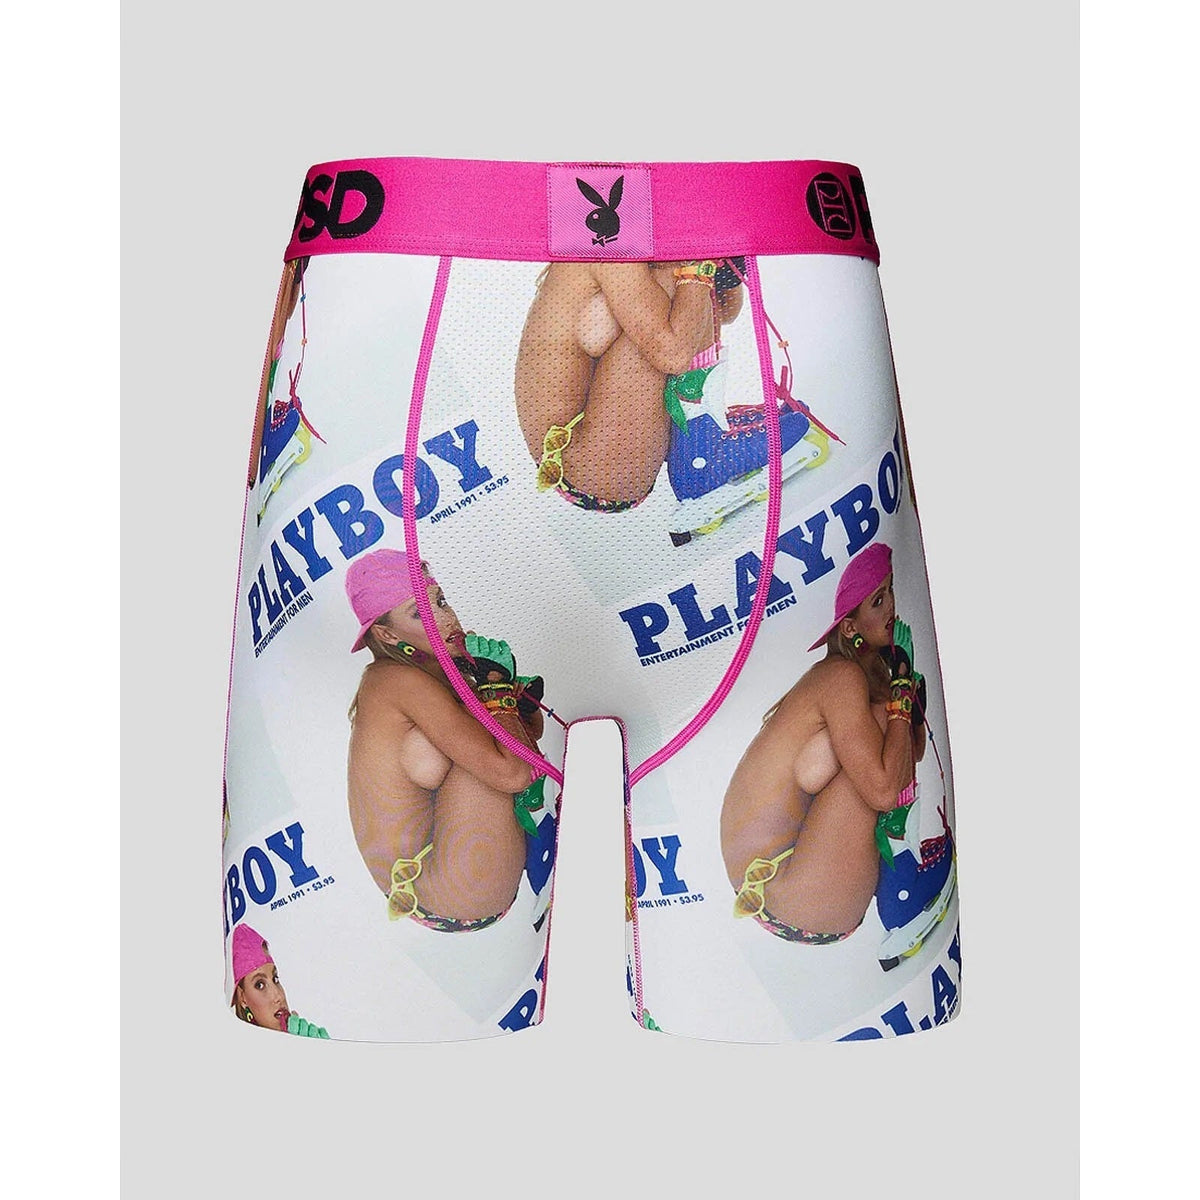 Playboy Skater Boxer Briefs-Mens Underwear-Scarlett Dawn